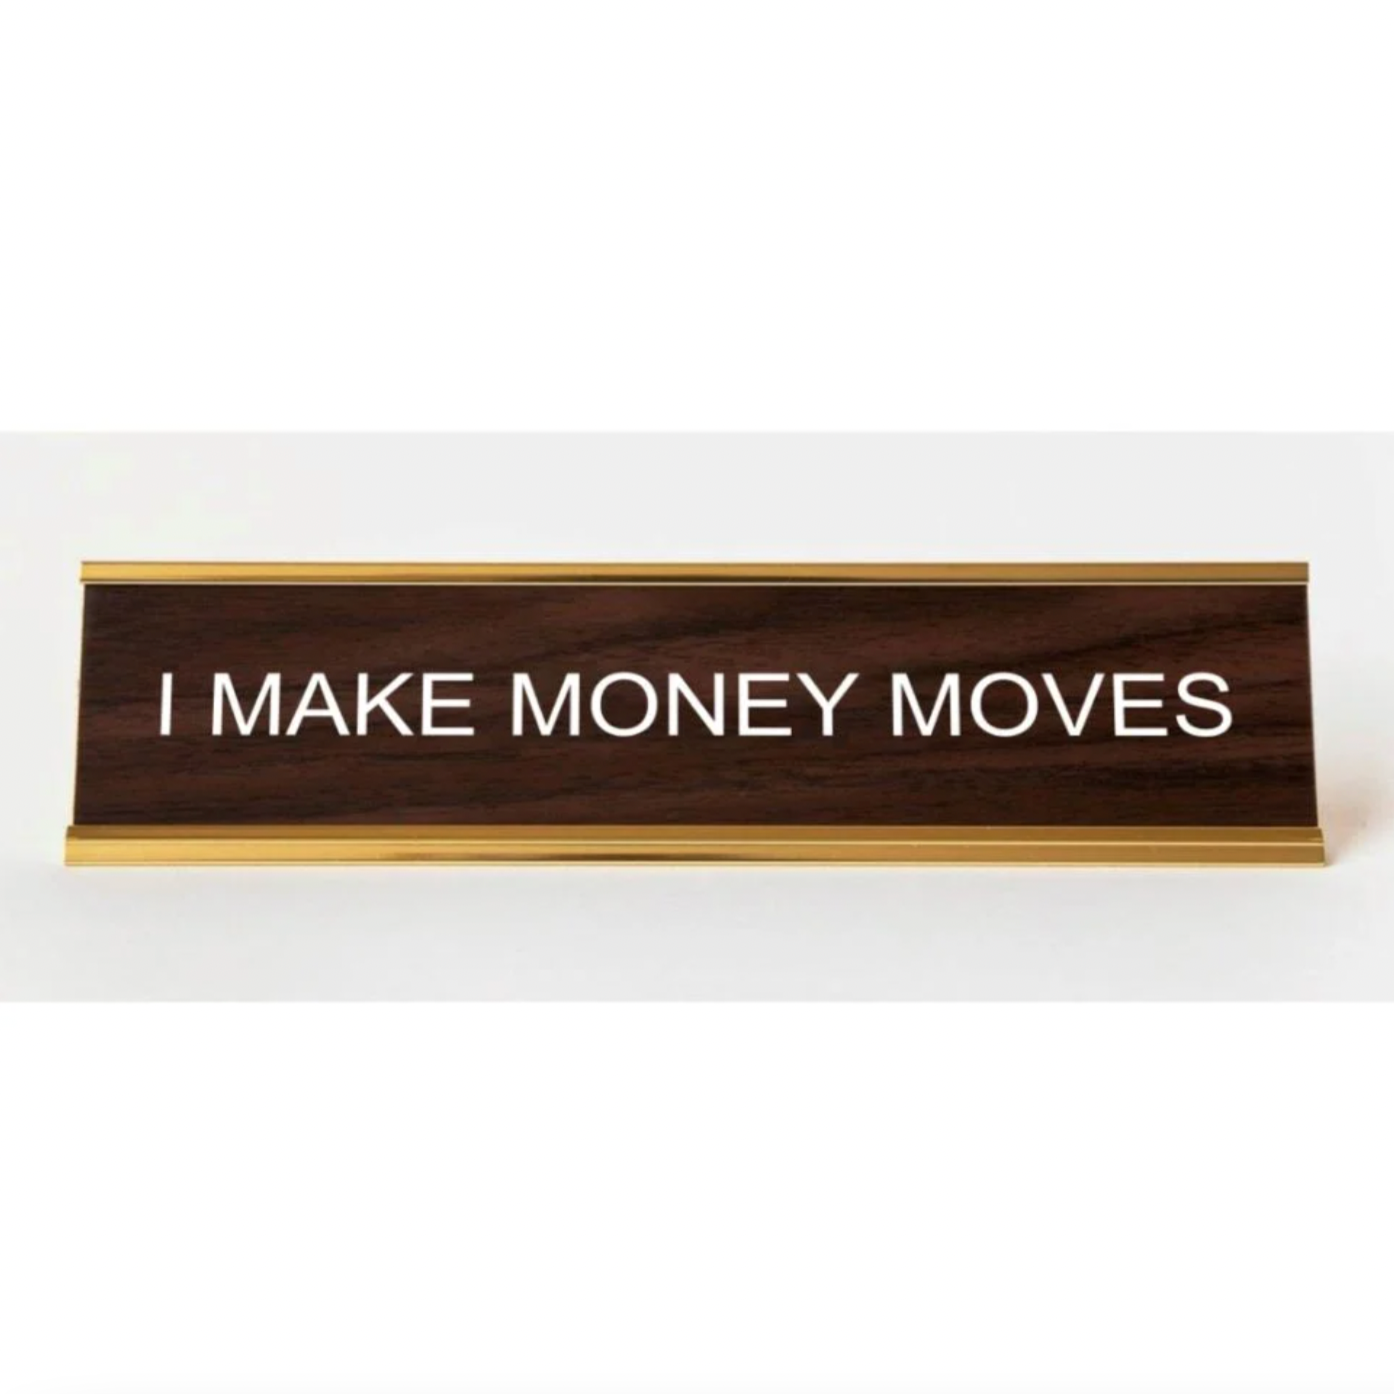 I MAKE MONEY MOVES